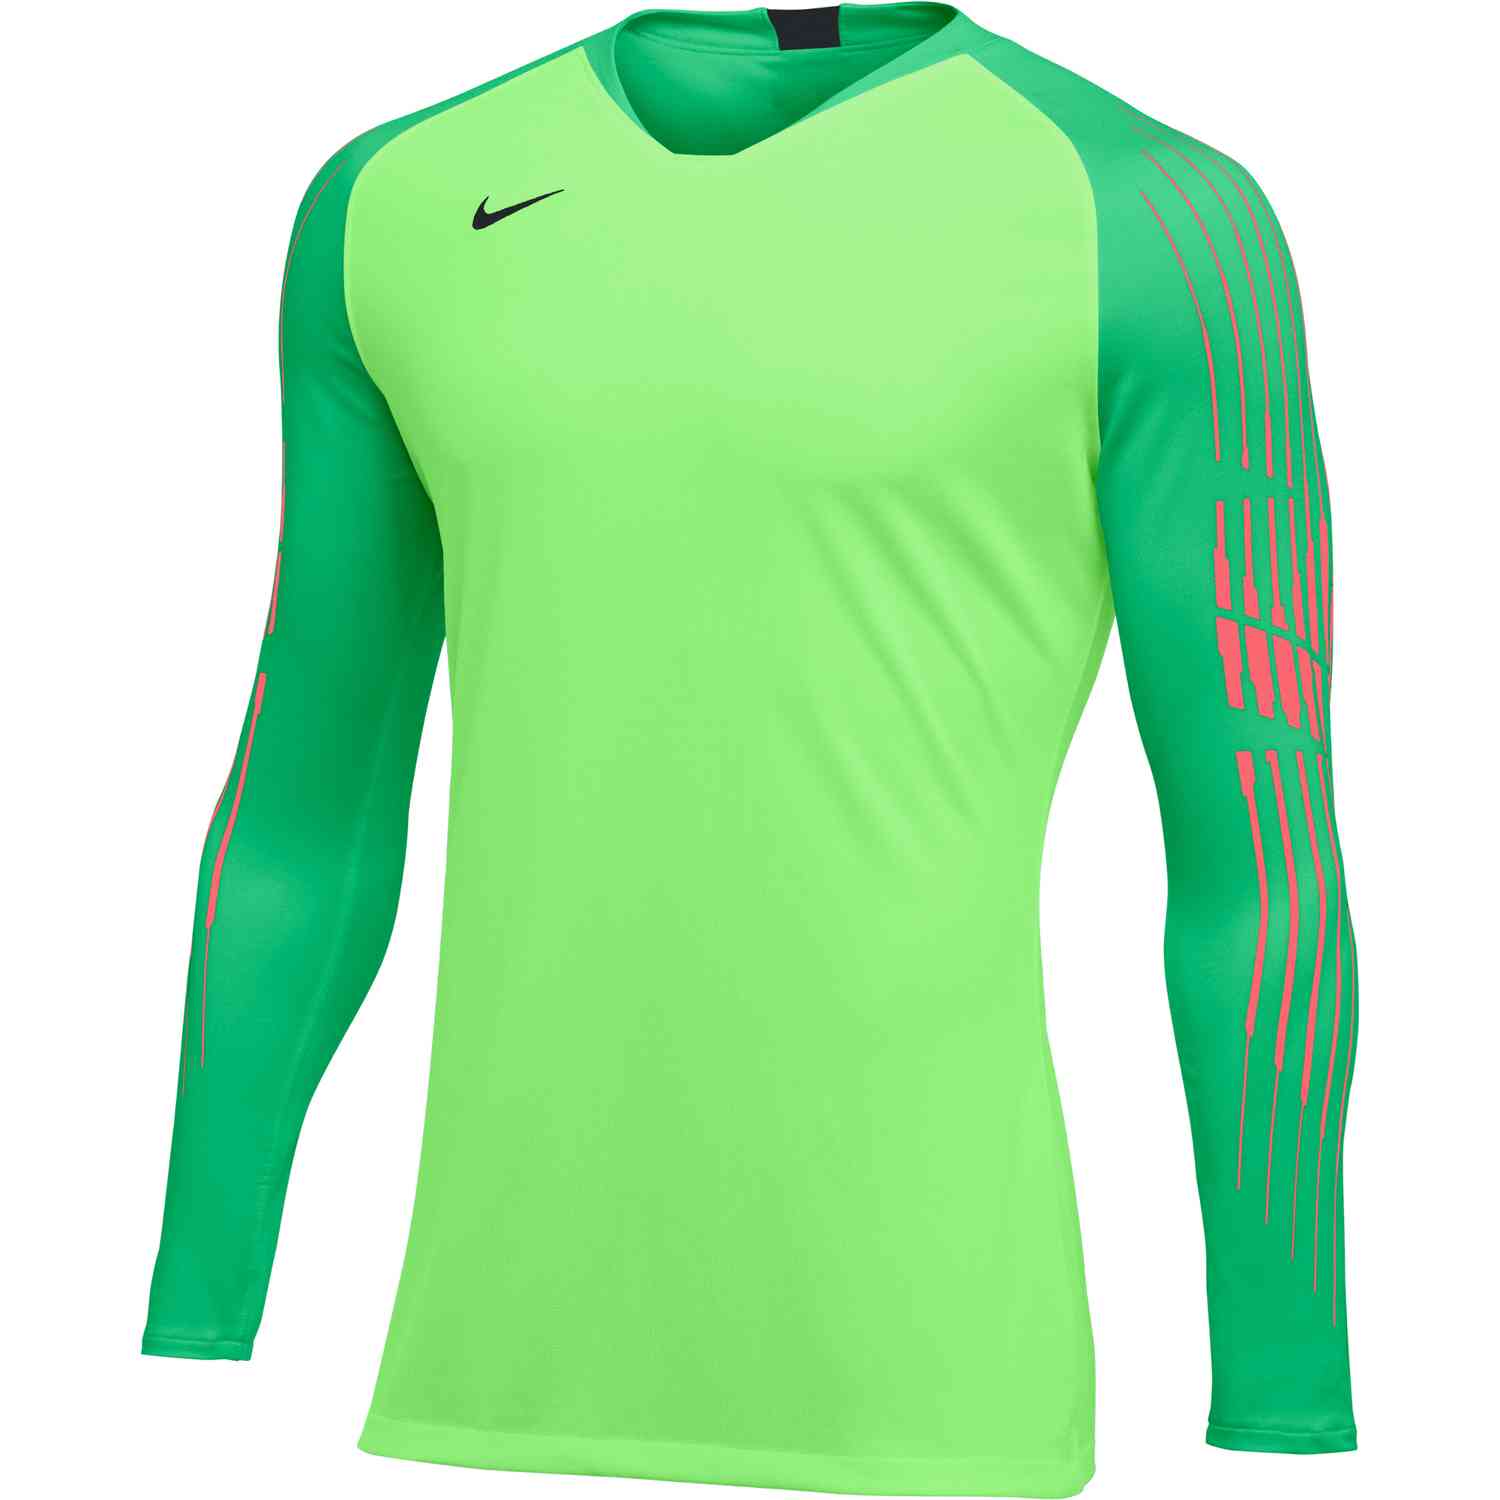 Nike Gardien II Goalkeeper Jersey - Green Strike - Soccer Master